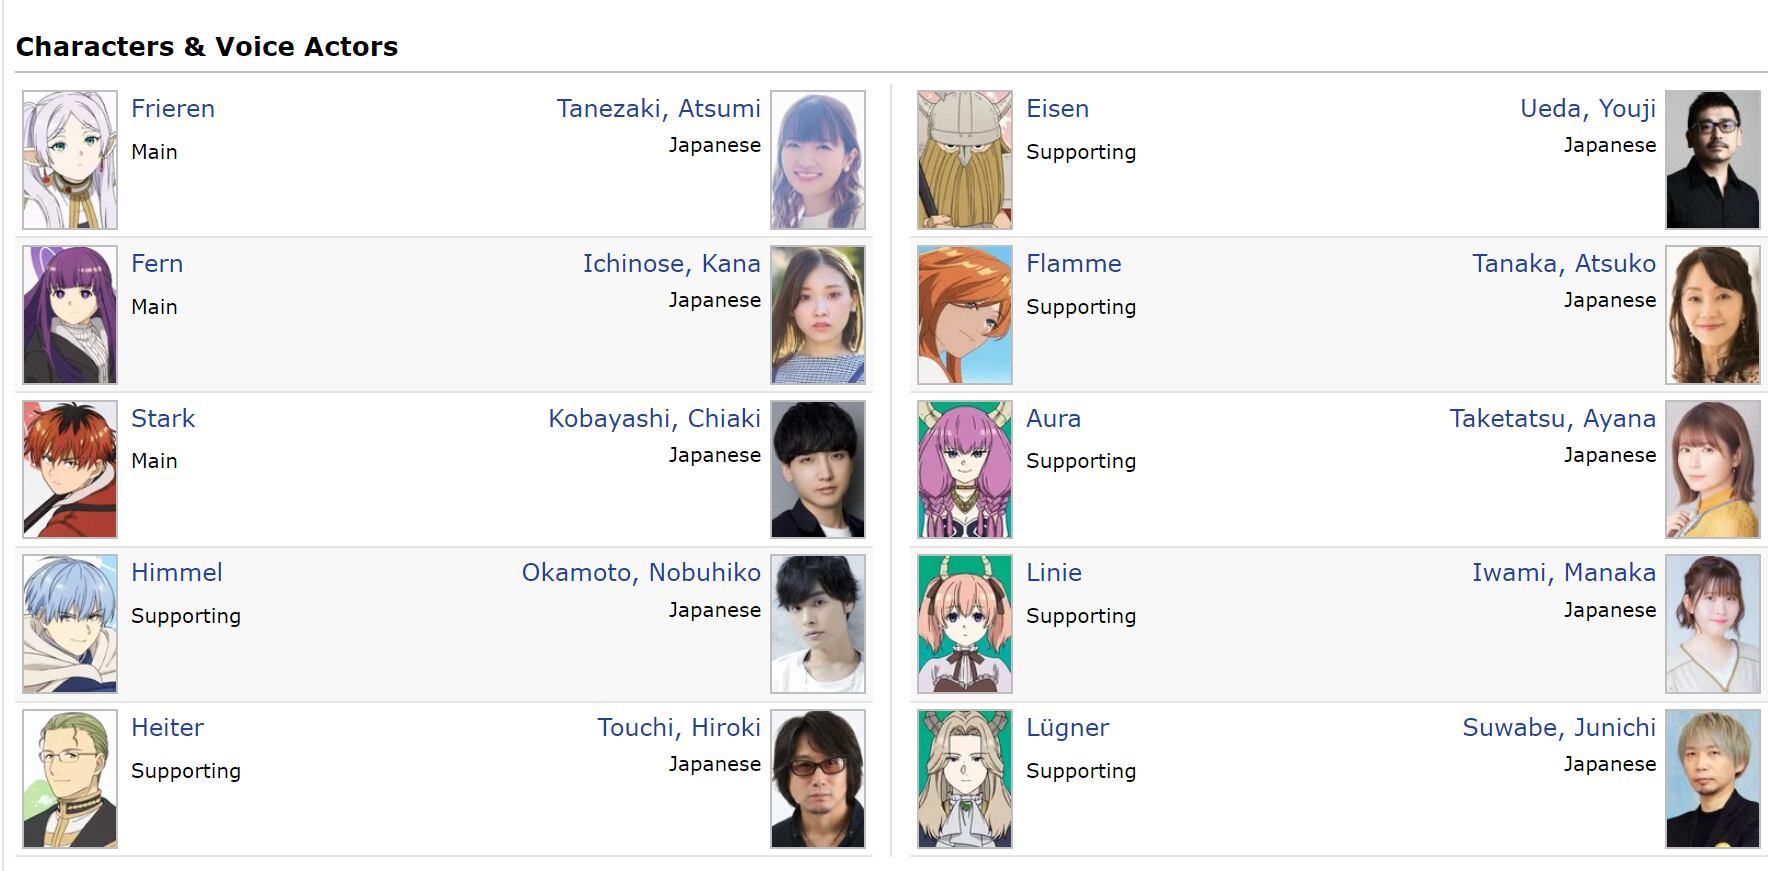 Frieren: Beyond Journey's End Anime Voice actors